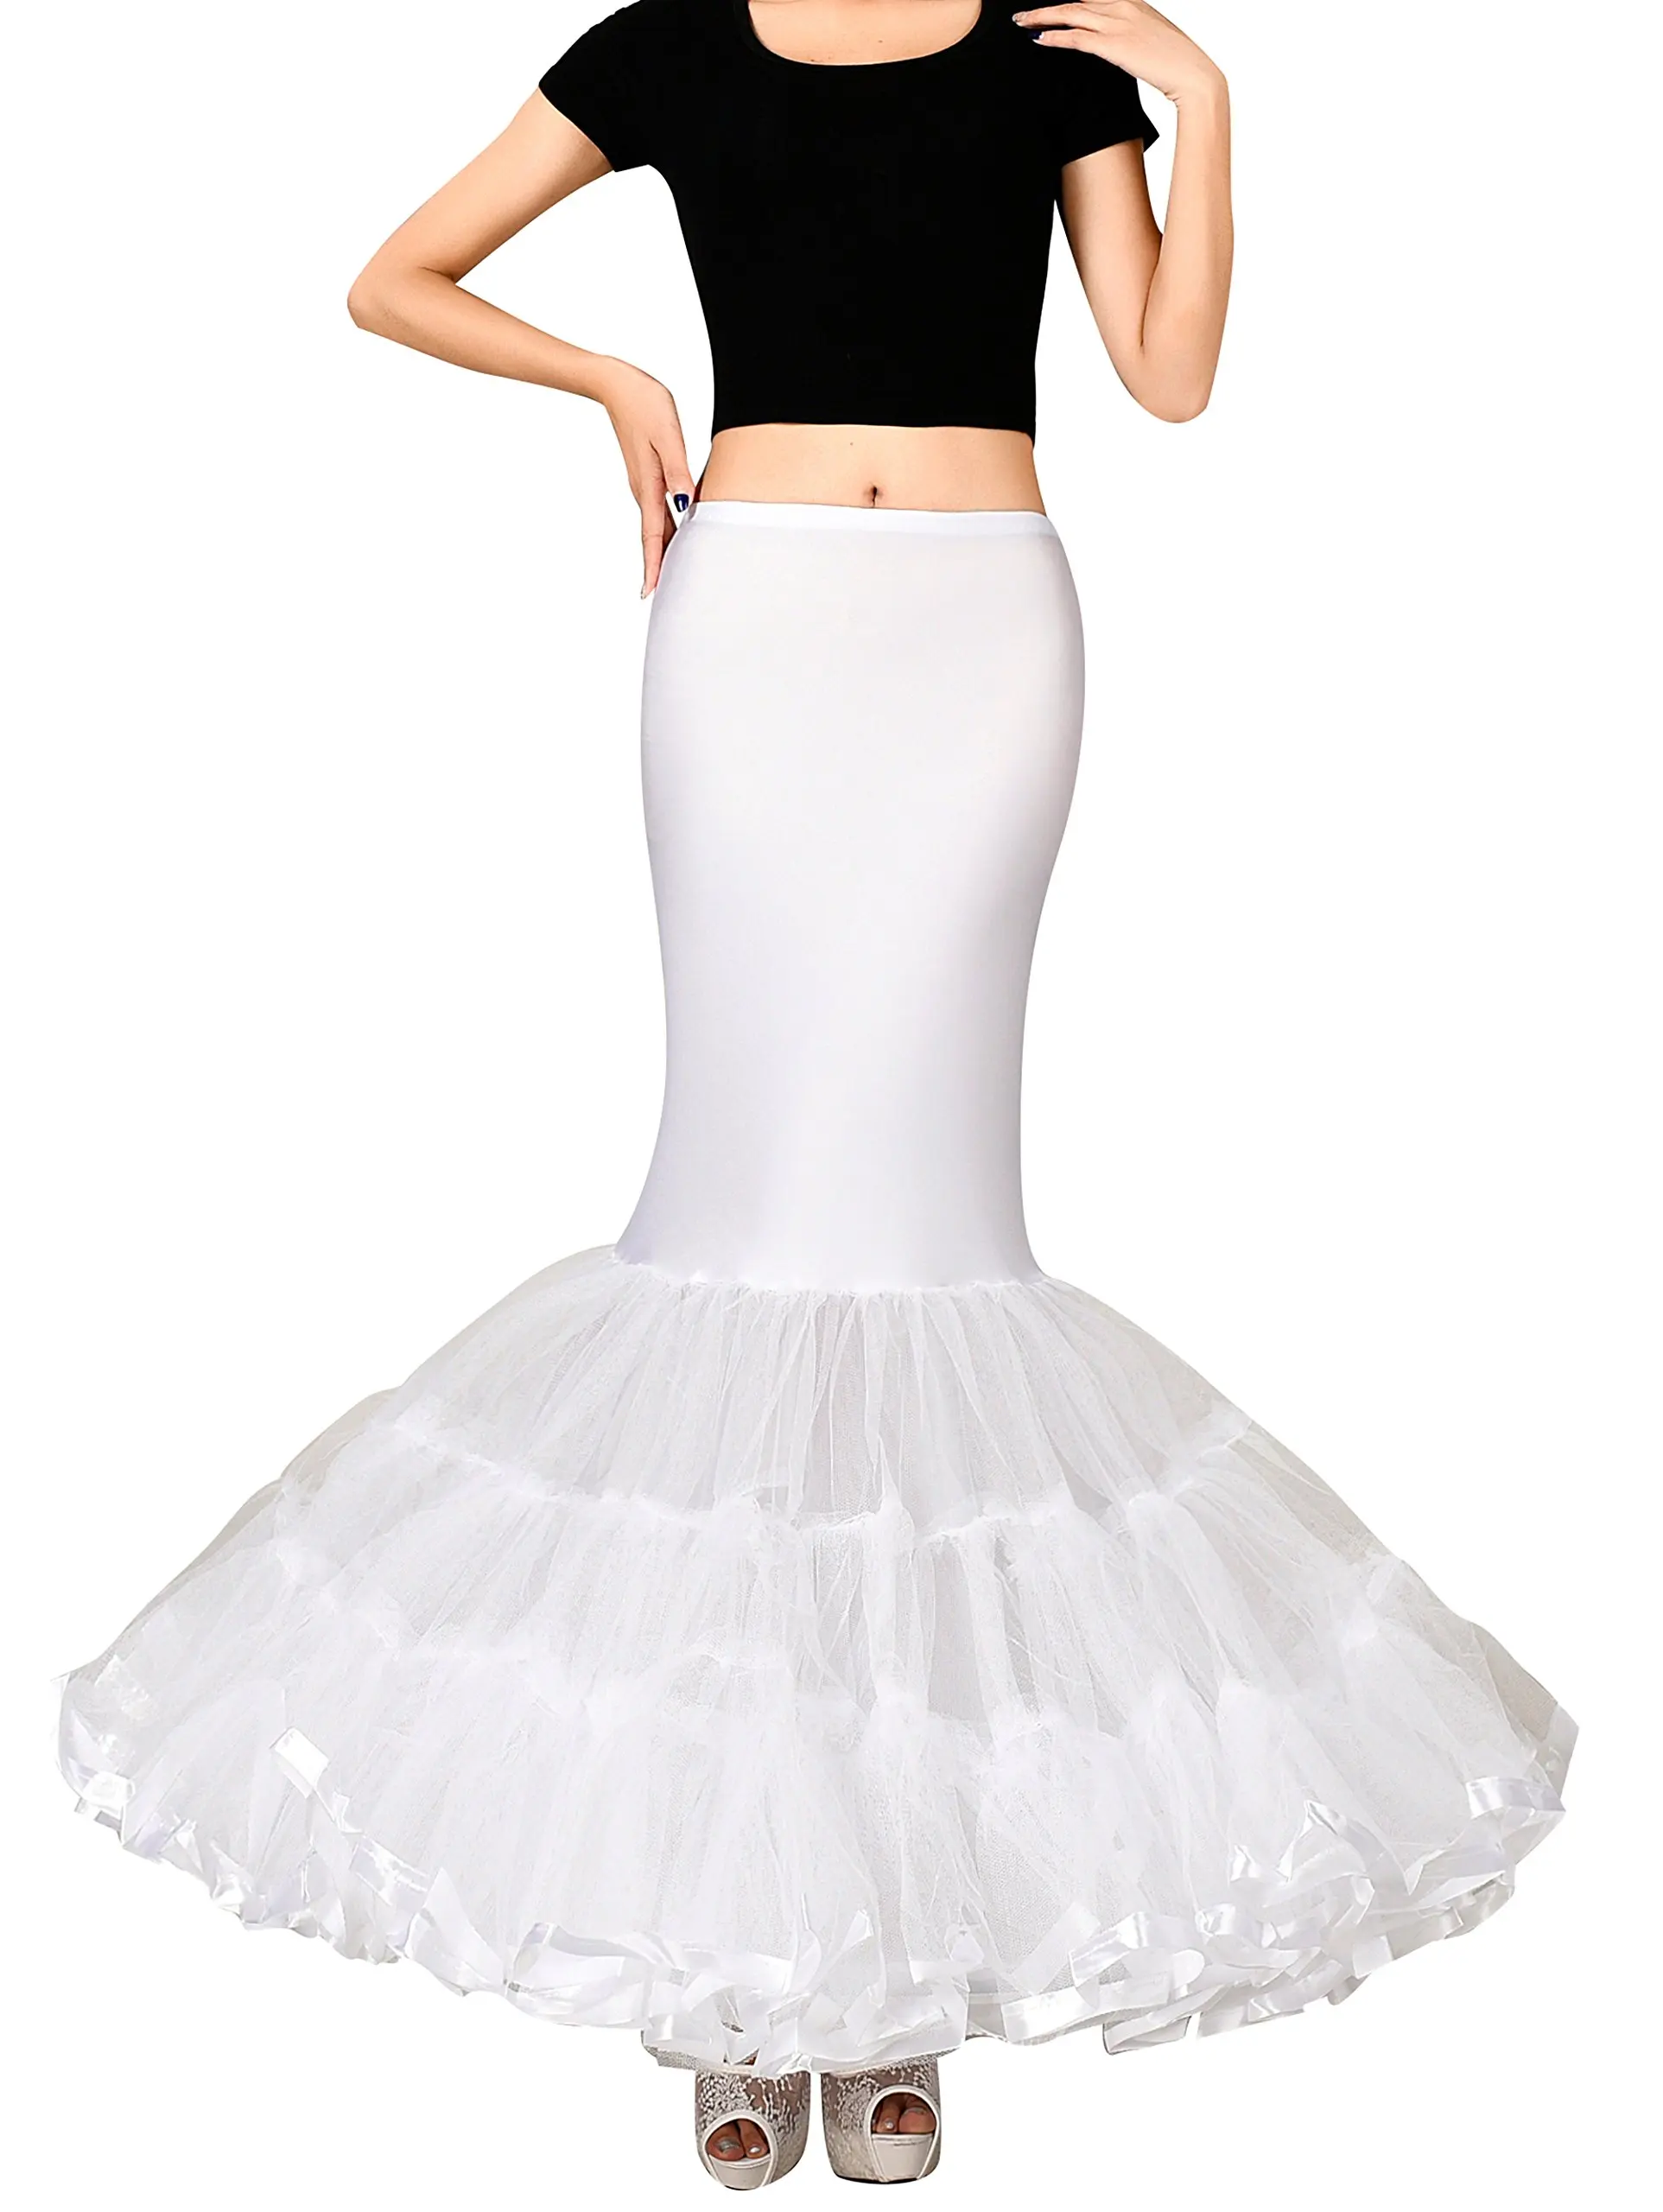 

Women's Trumpet Mermaid Bridal Petticoat Crinoline Slips Underskirt White